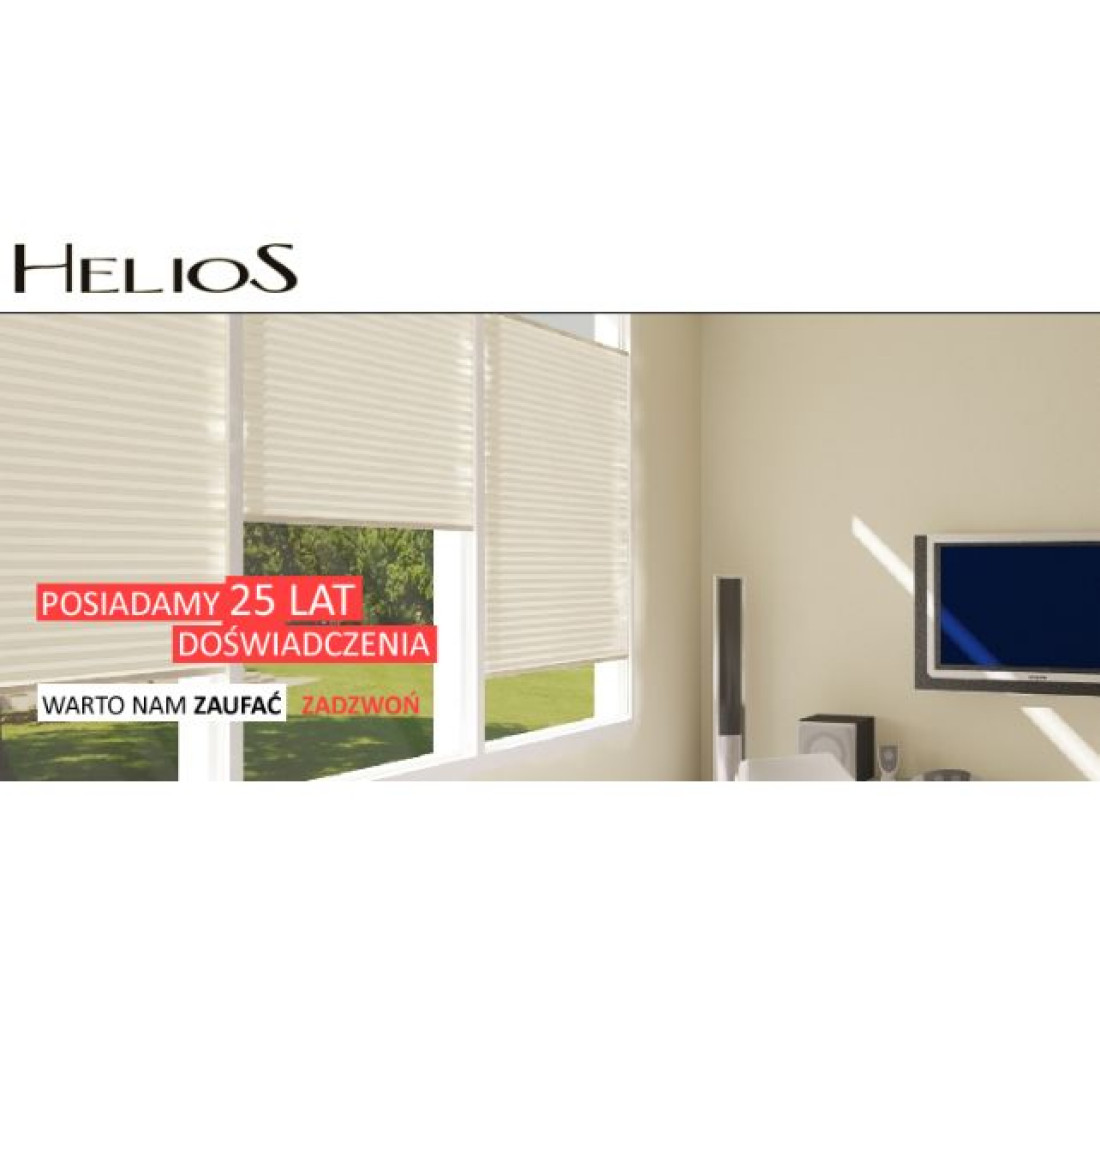 Promocja firmy Helios z okazji 25-lecia